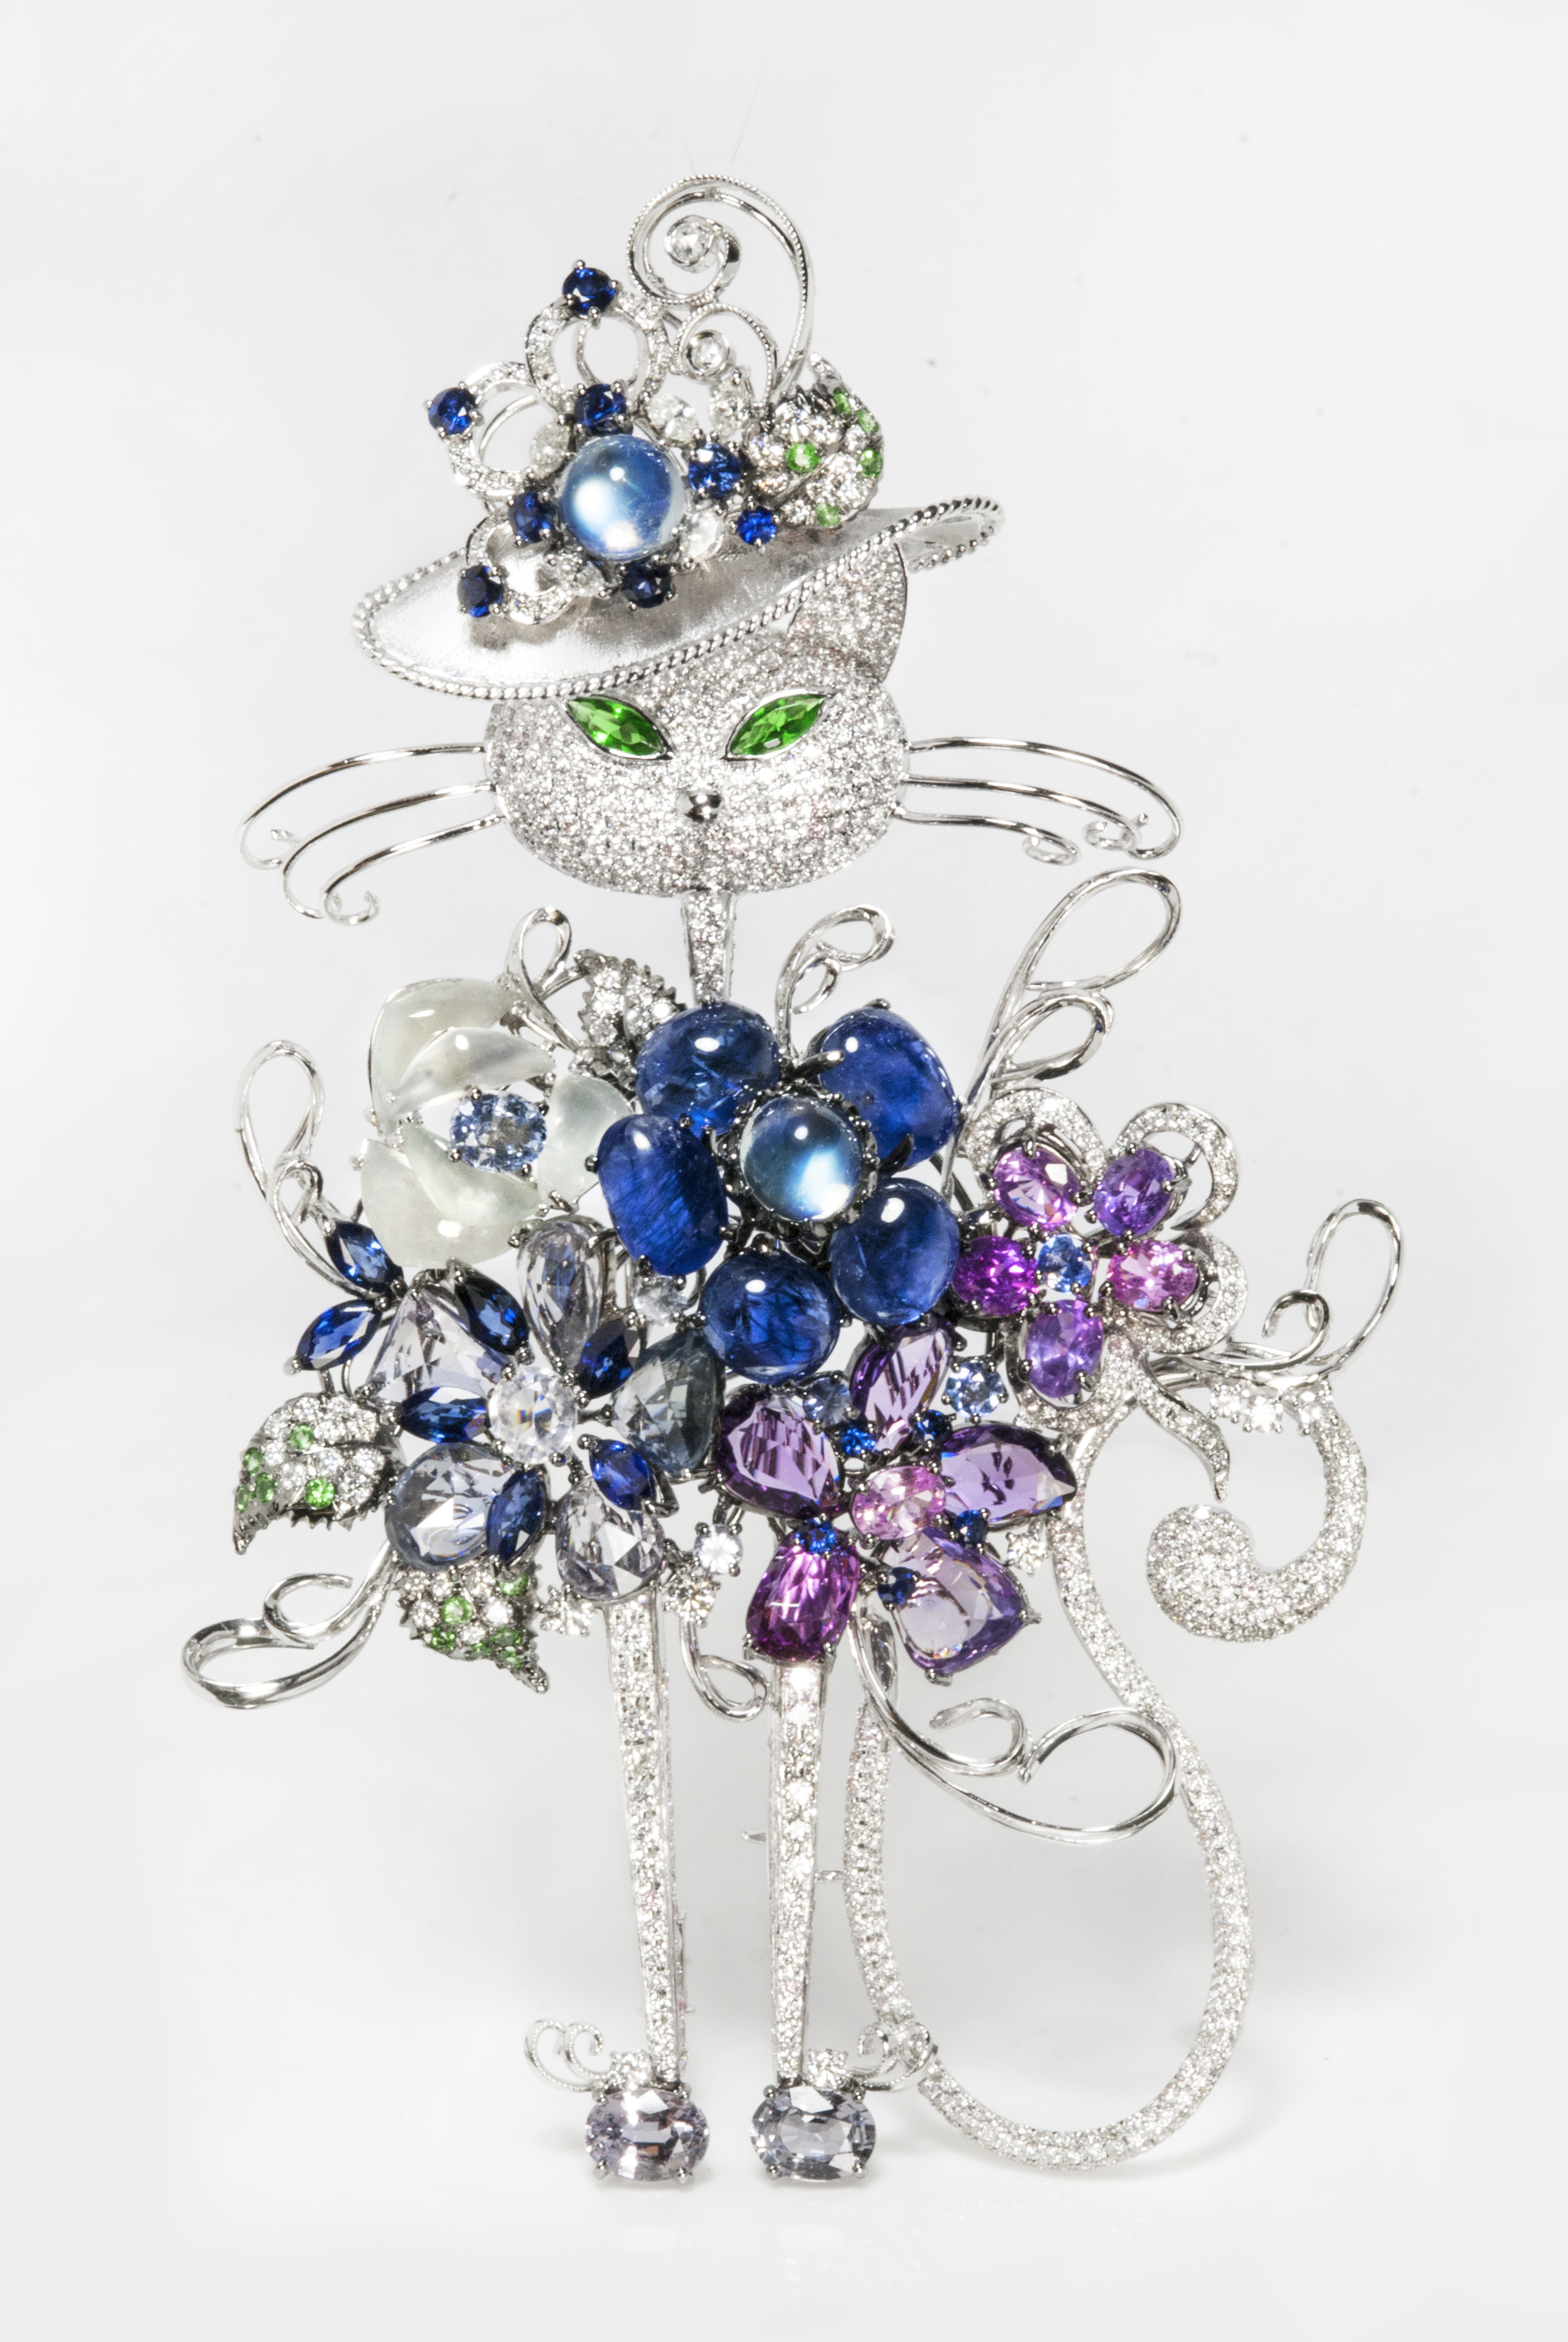 新锐设计师harry lu推出的猫系列珠宝胸针雅致